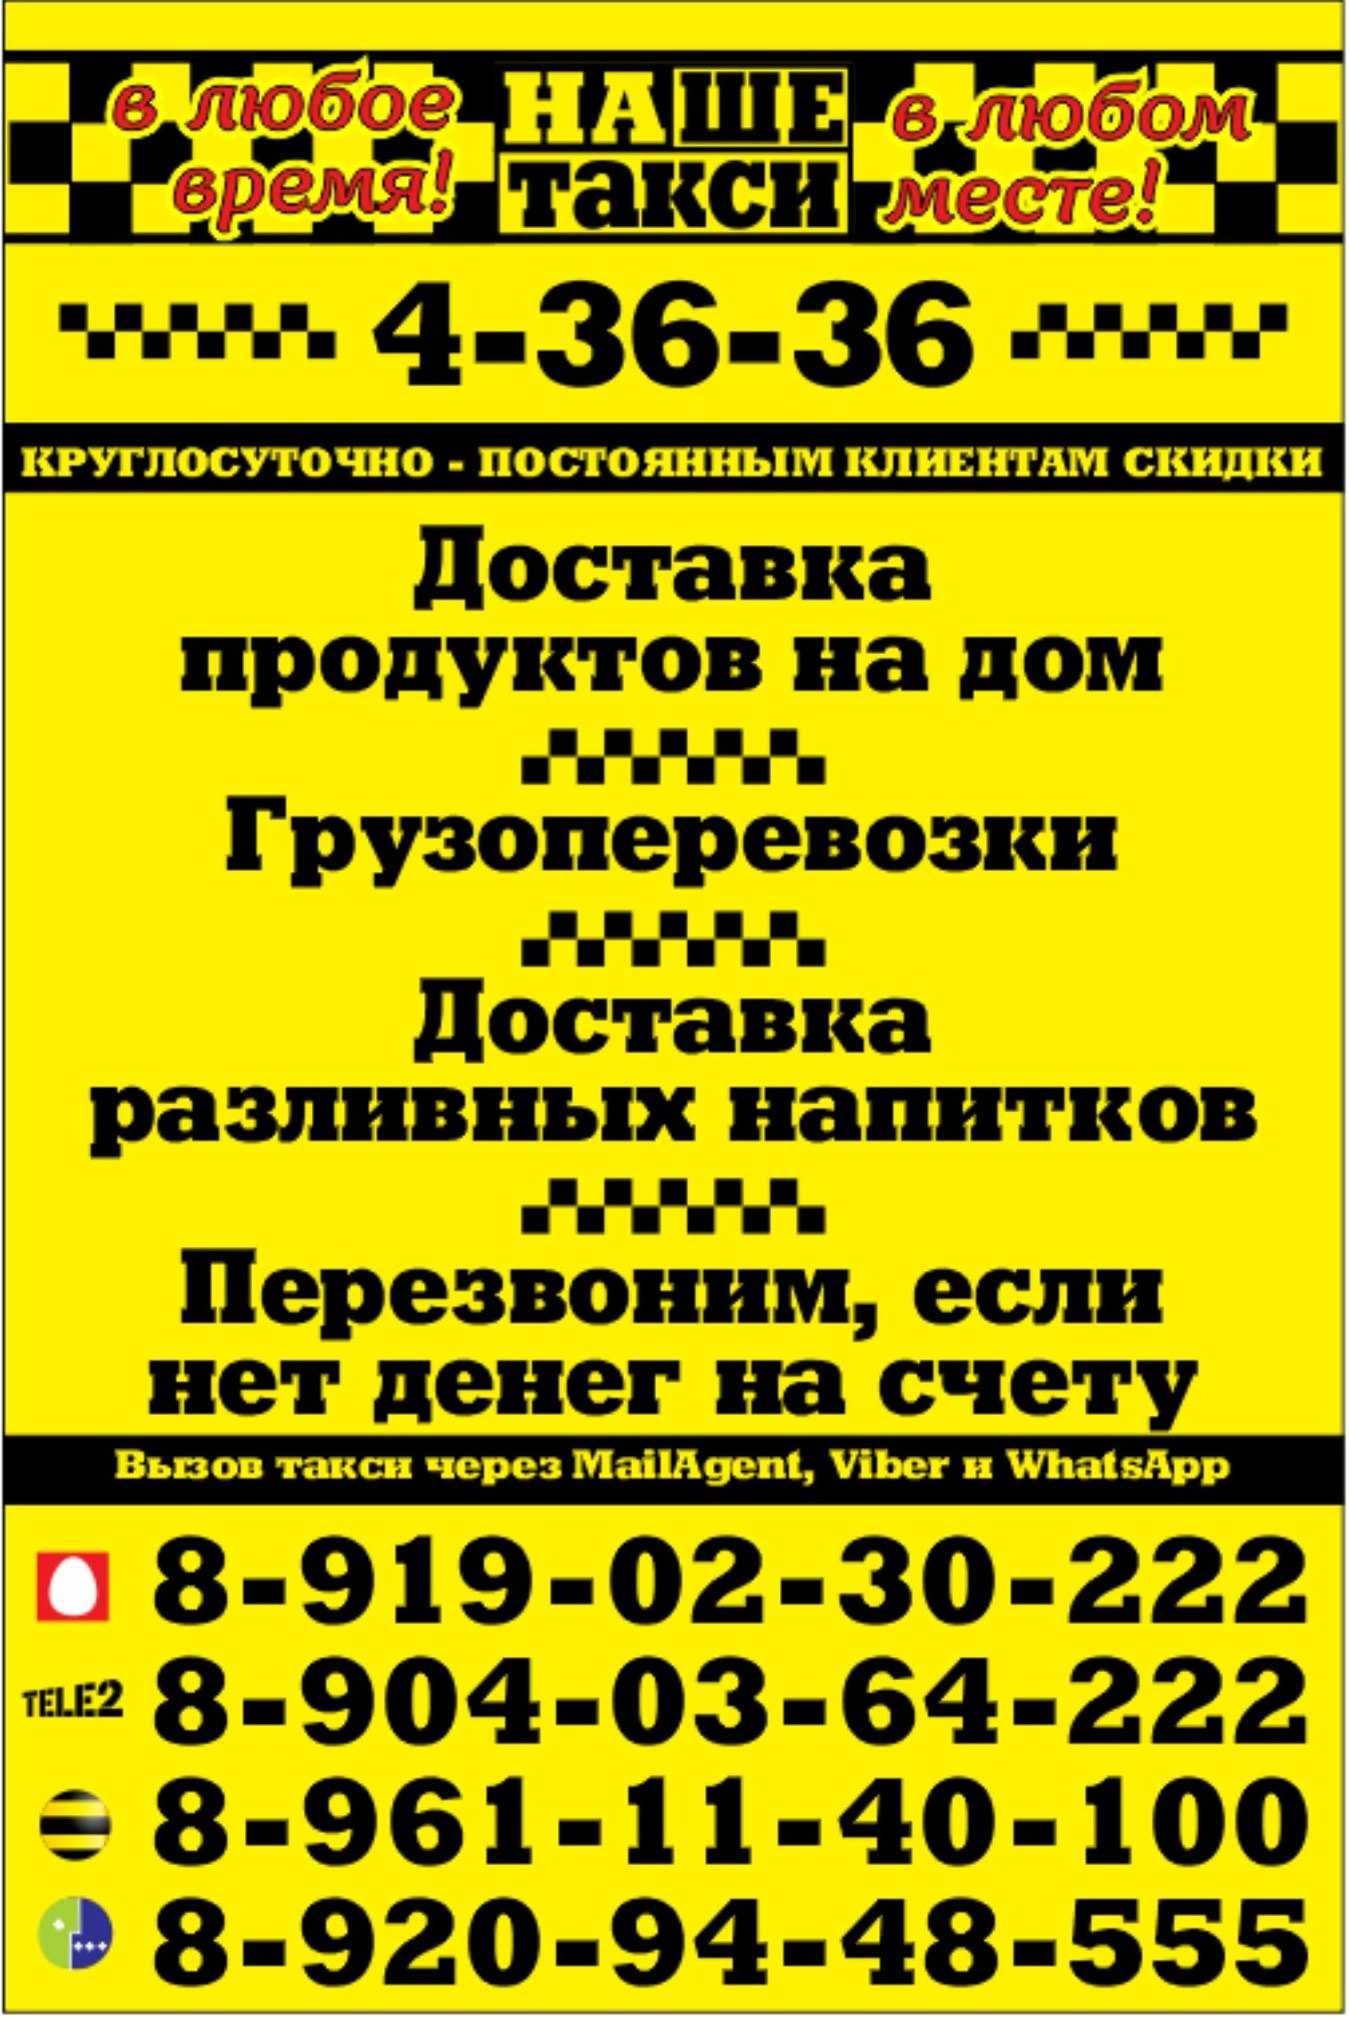 Яндекс.такси магадан. телефон диспетчера для заказа. тарифы. как вызвать. работа.